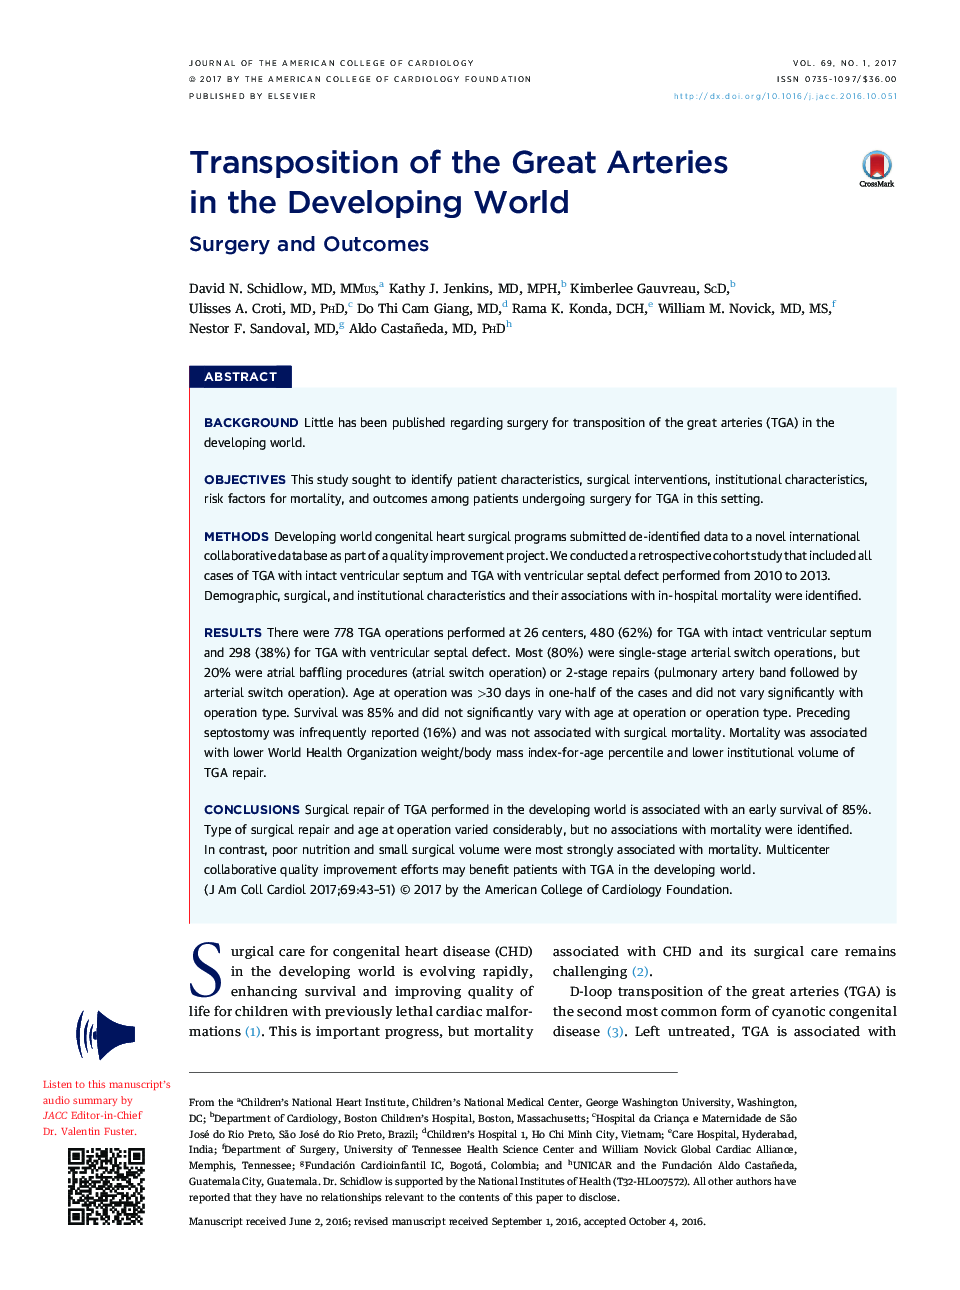 تحقیق اصلی انتقال حرکات بزرگ در جهان در حال توسعه: جراحی و نتایج 